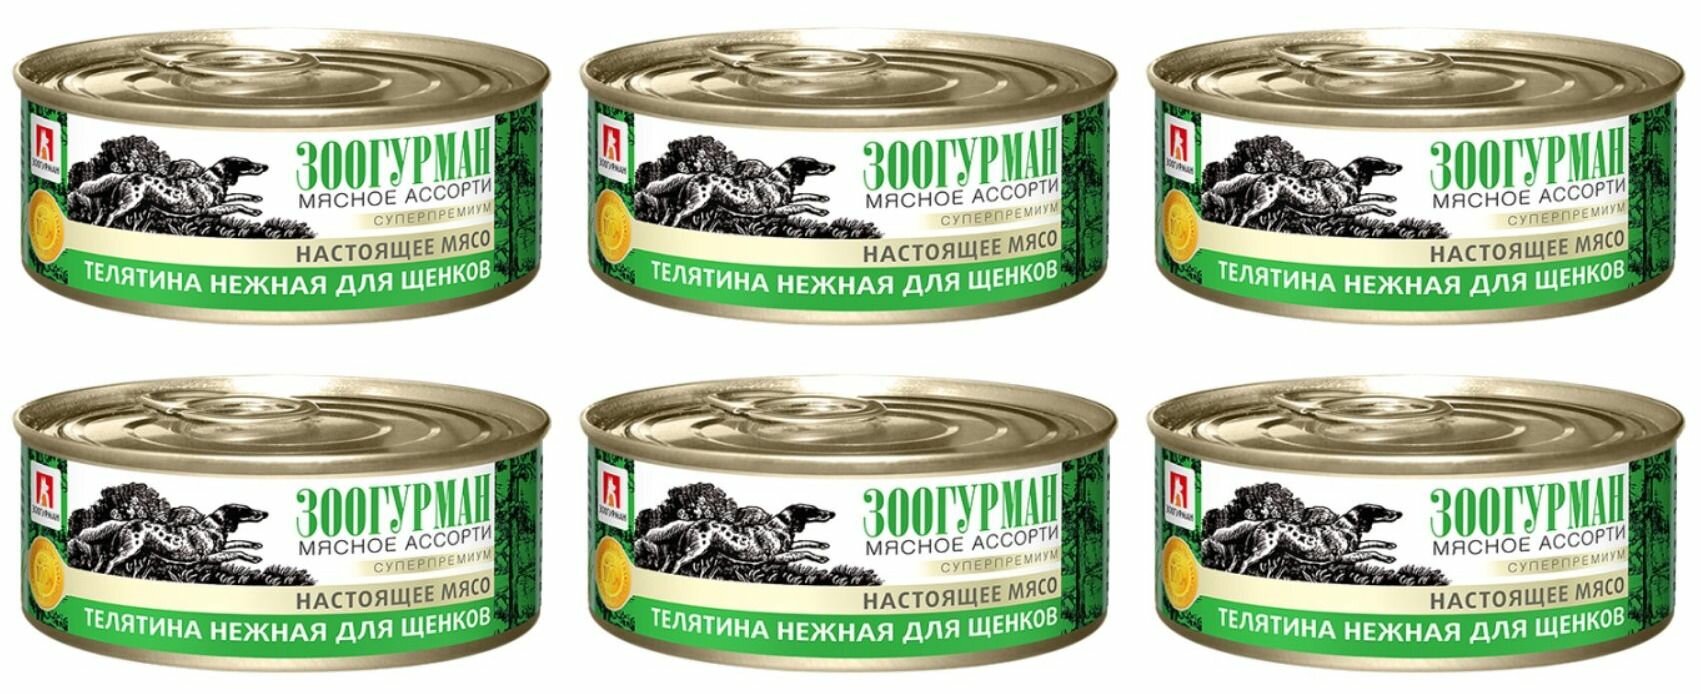 Зоогурман Консервы для щенков Мясное ассорти, телятина нежная, суперпремиум, 100 гр, 6 шт